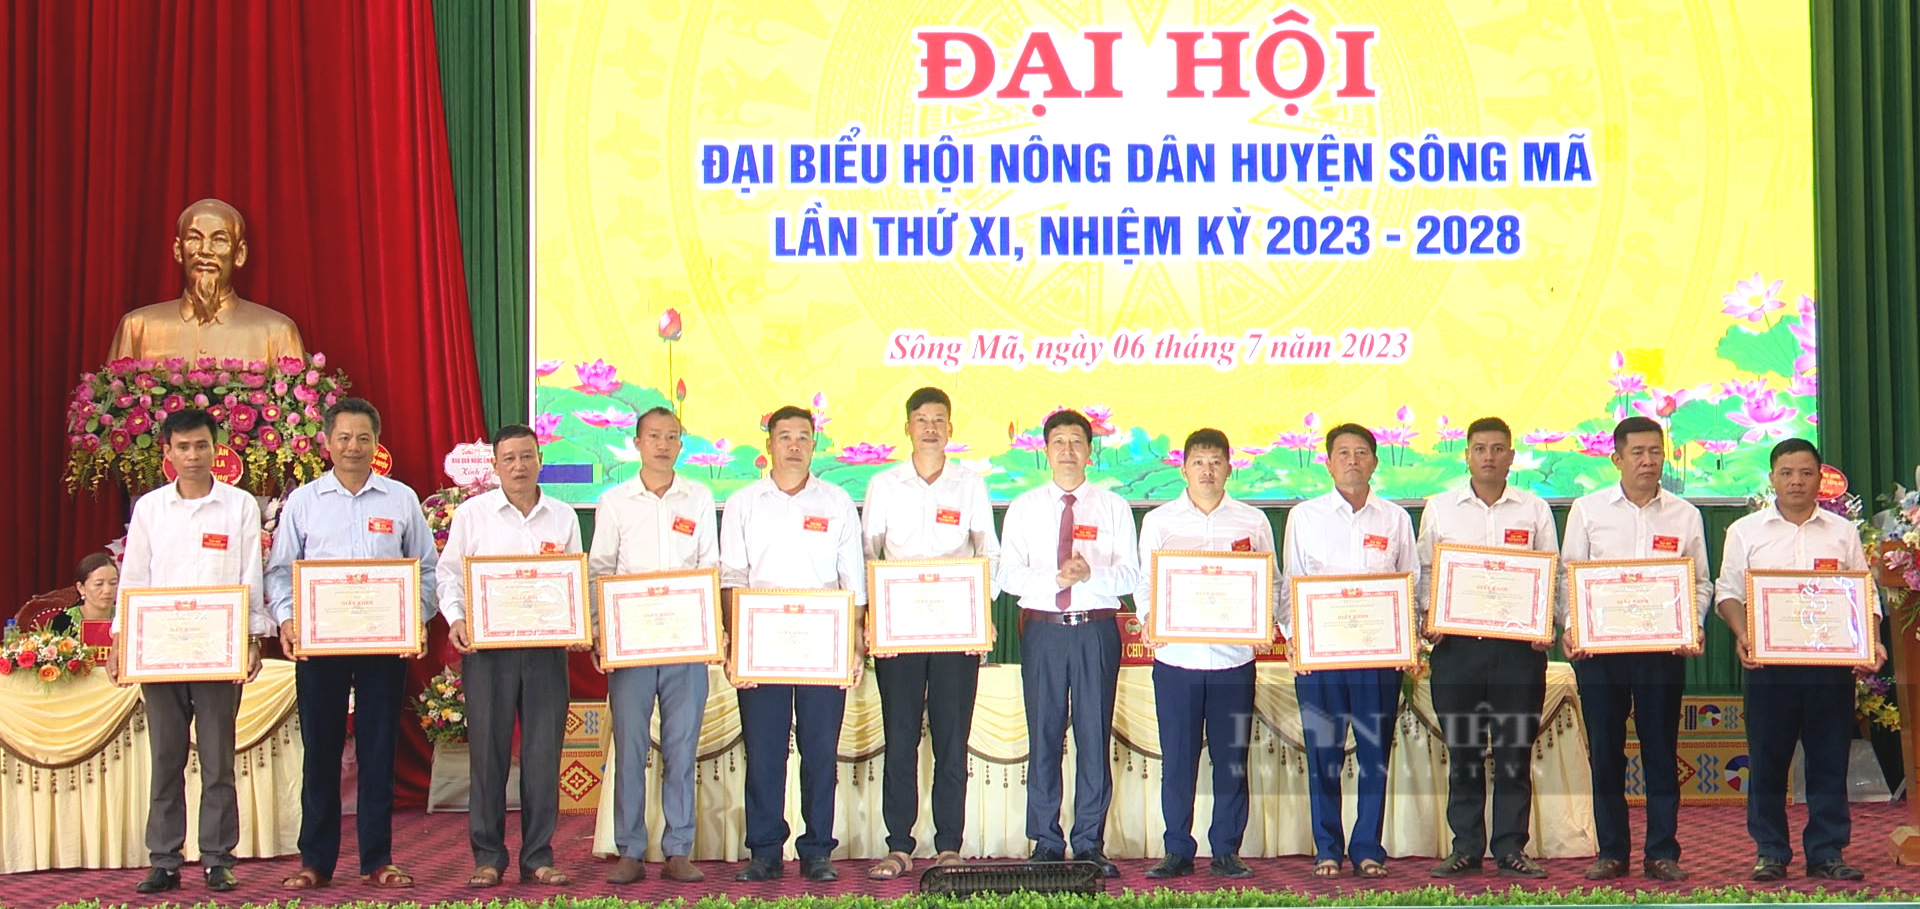 Ông Lê Văn Quân tái cử Chủ tịch Hội Nông dân huyện Sông Mã - Ảnh 11.